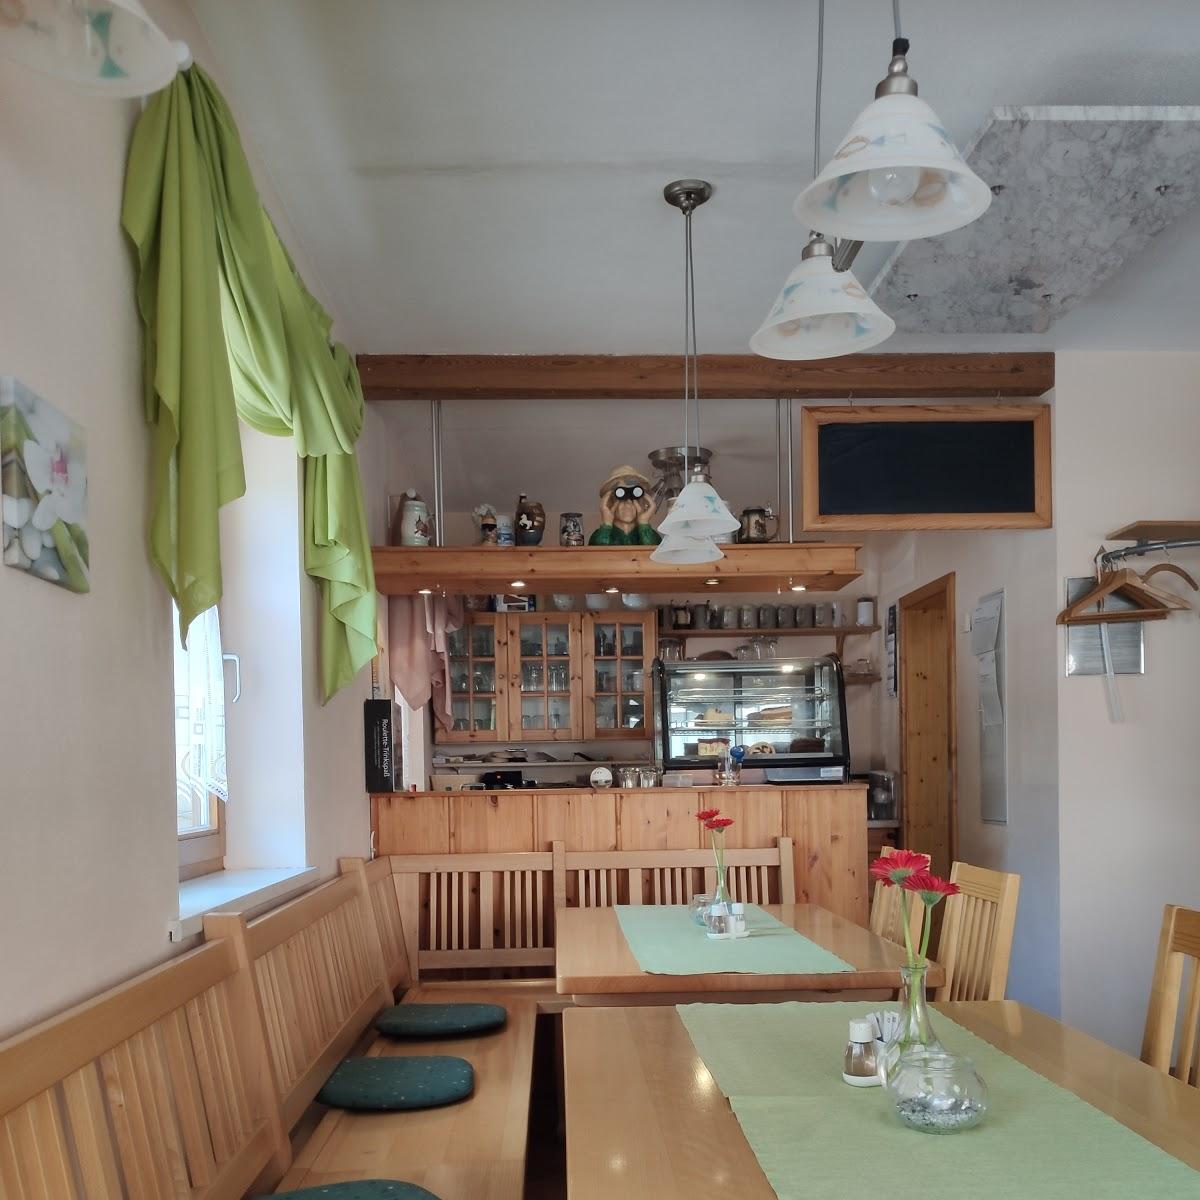 Restaurant "Brunnastübla" in Viereth-Trunstadt